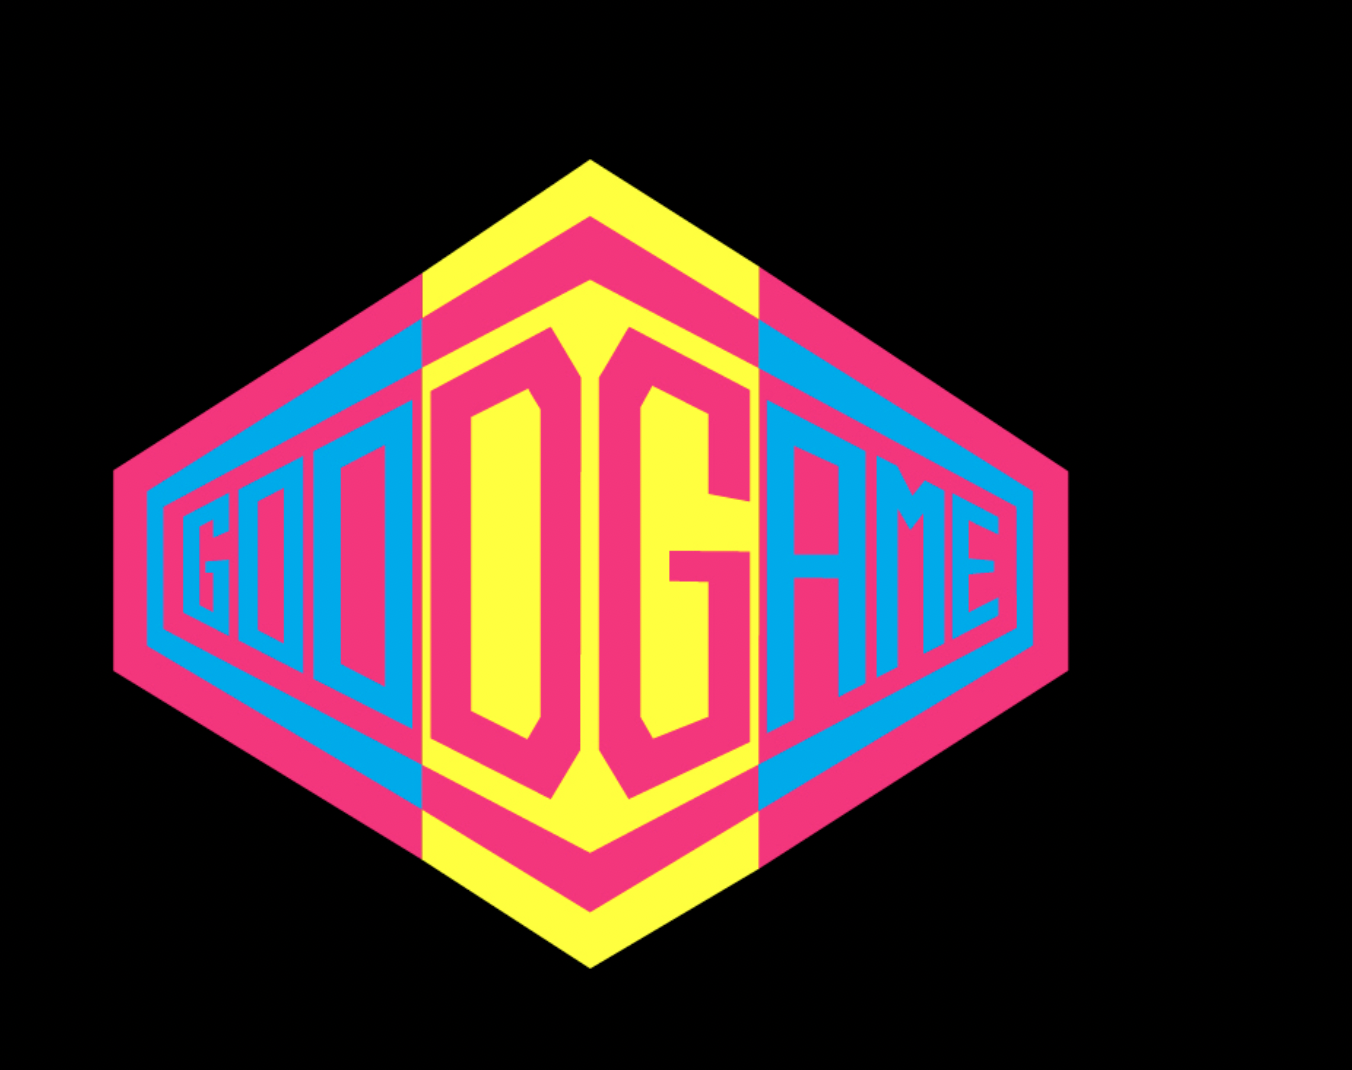 Dolce&Gabbana lanzó la serie web “gooDGame” y una colección especial para gamers